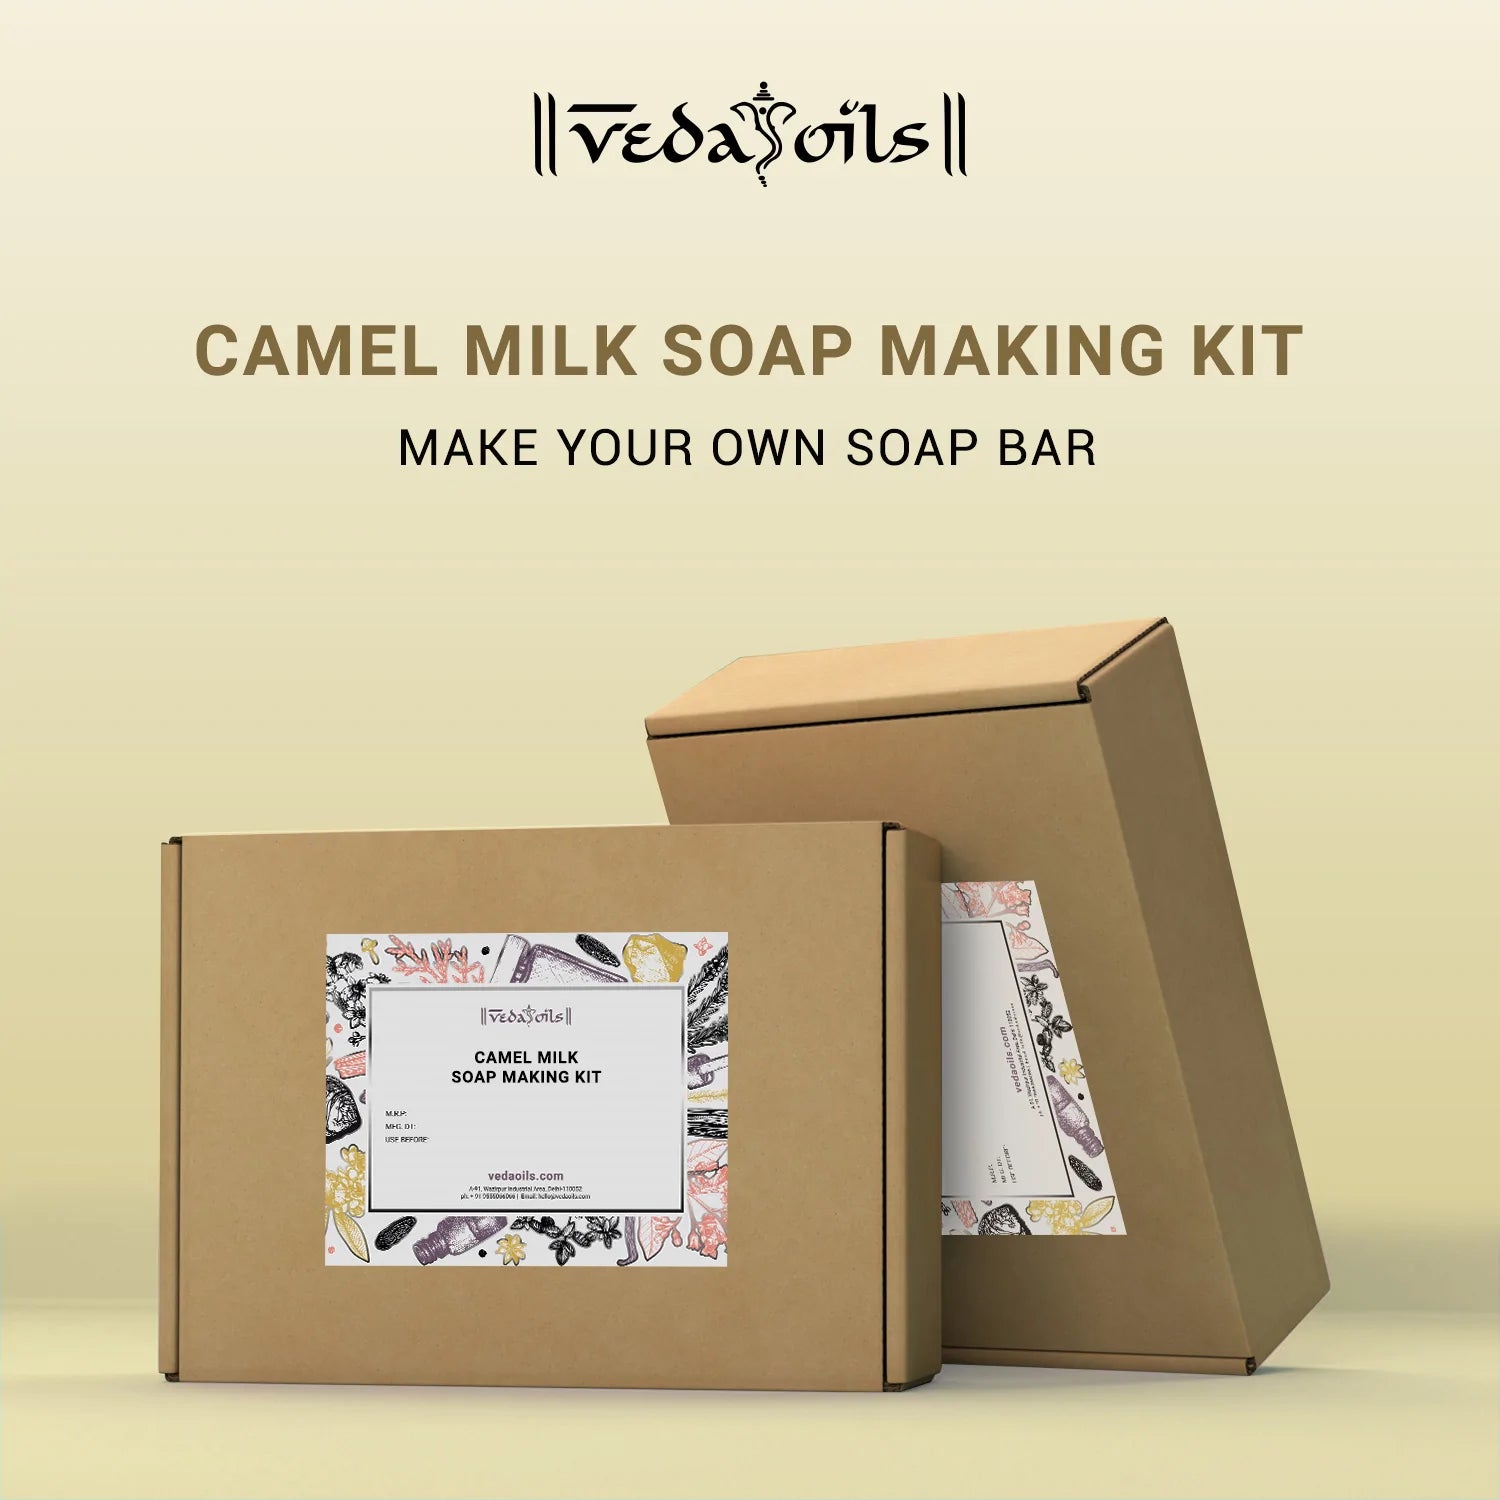 Buy DIY Camel Milk Soap Making Kit Online at Best Price – VedaOils USA